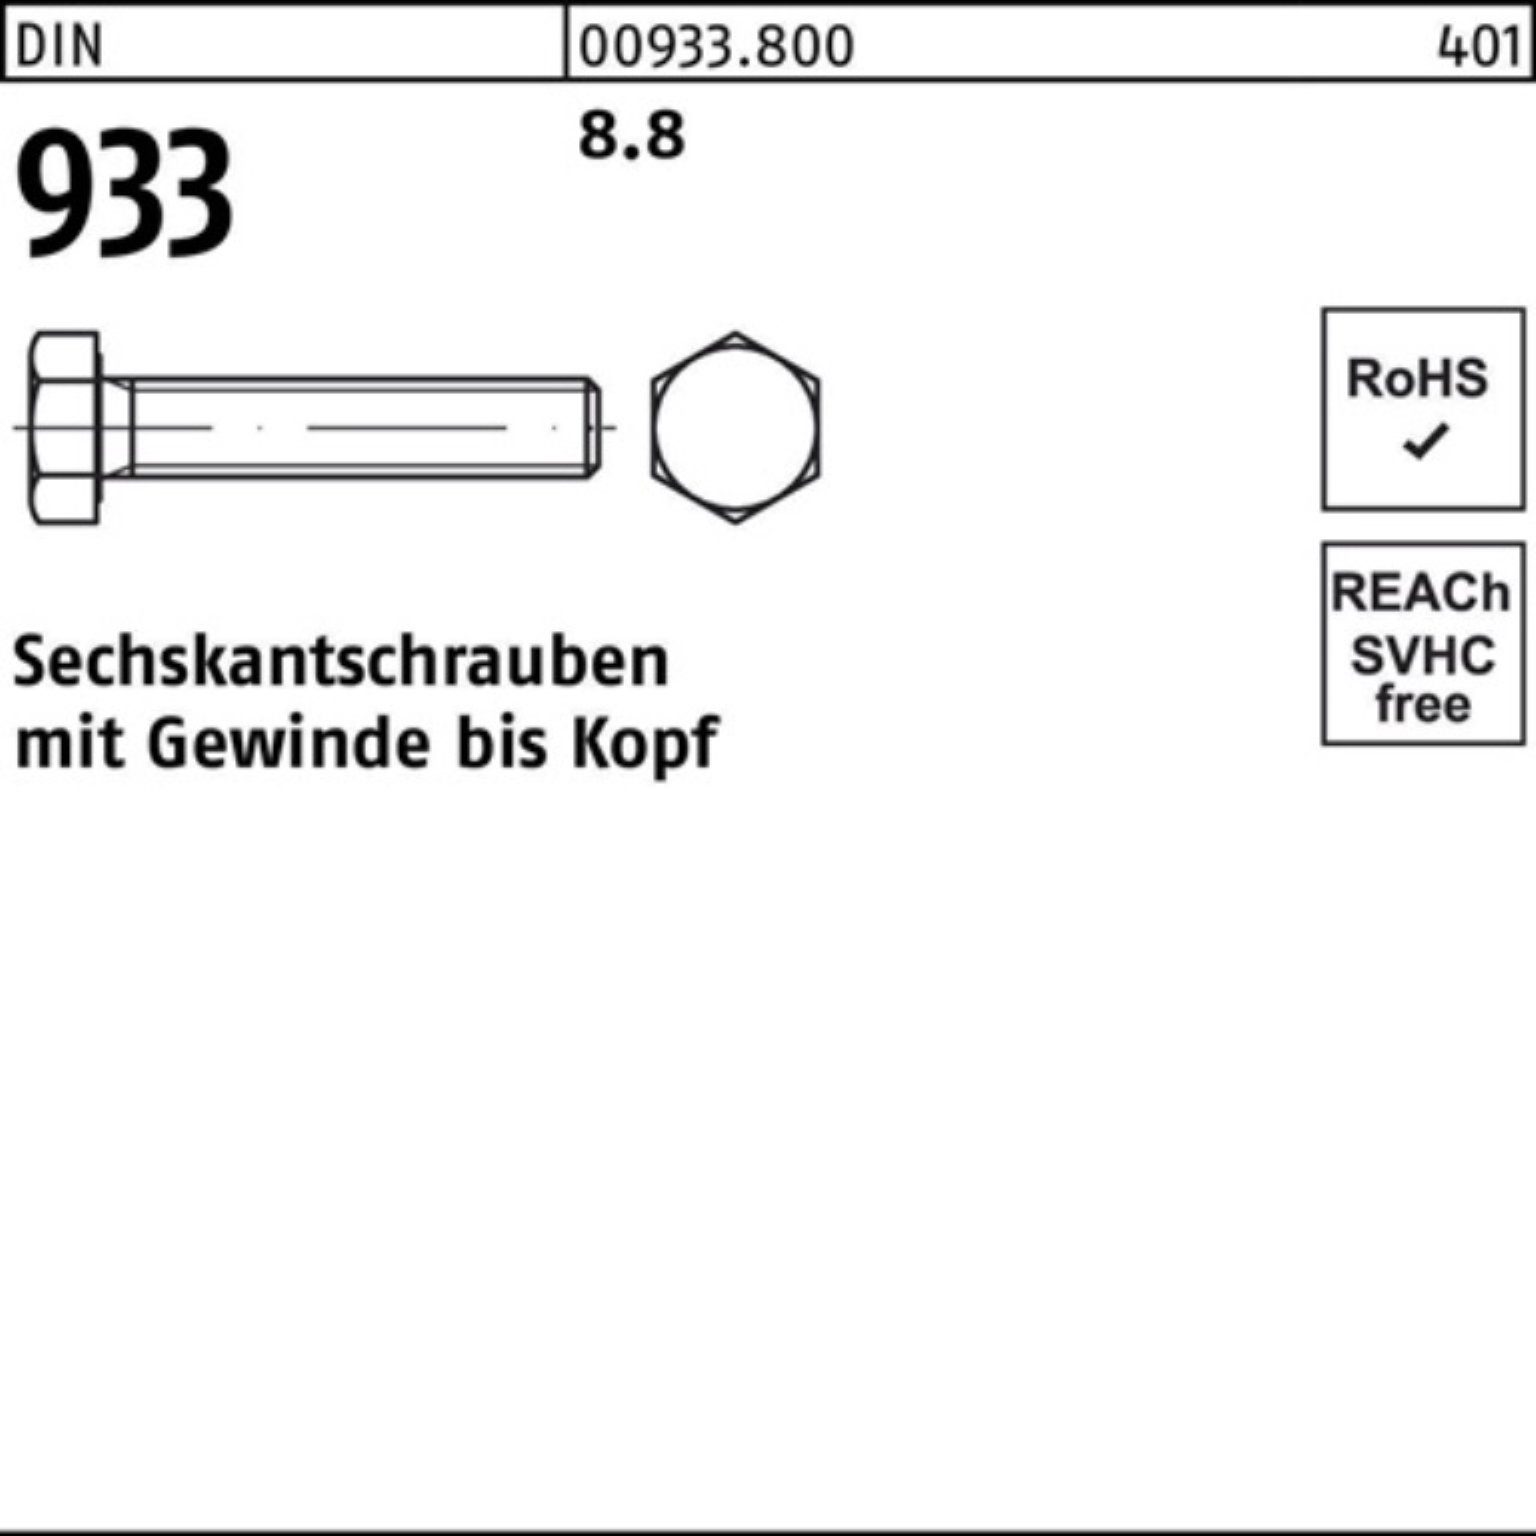 Reyher Sechskantschraube 100er 933 M30x DIN DIN Pack Sechskantschraube 1 Stück VG 8.8 933 220